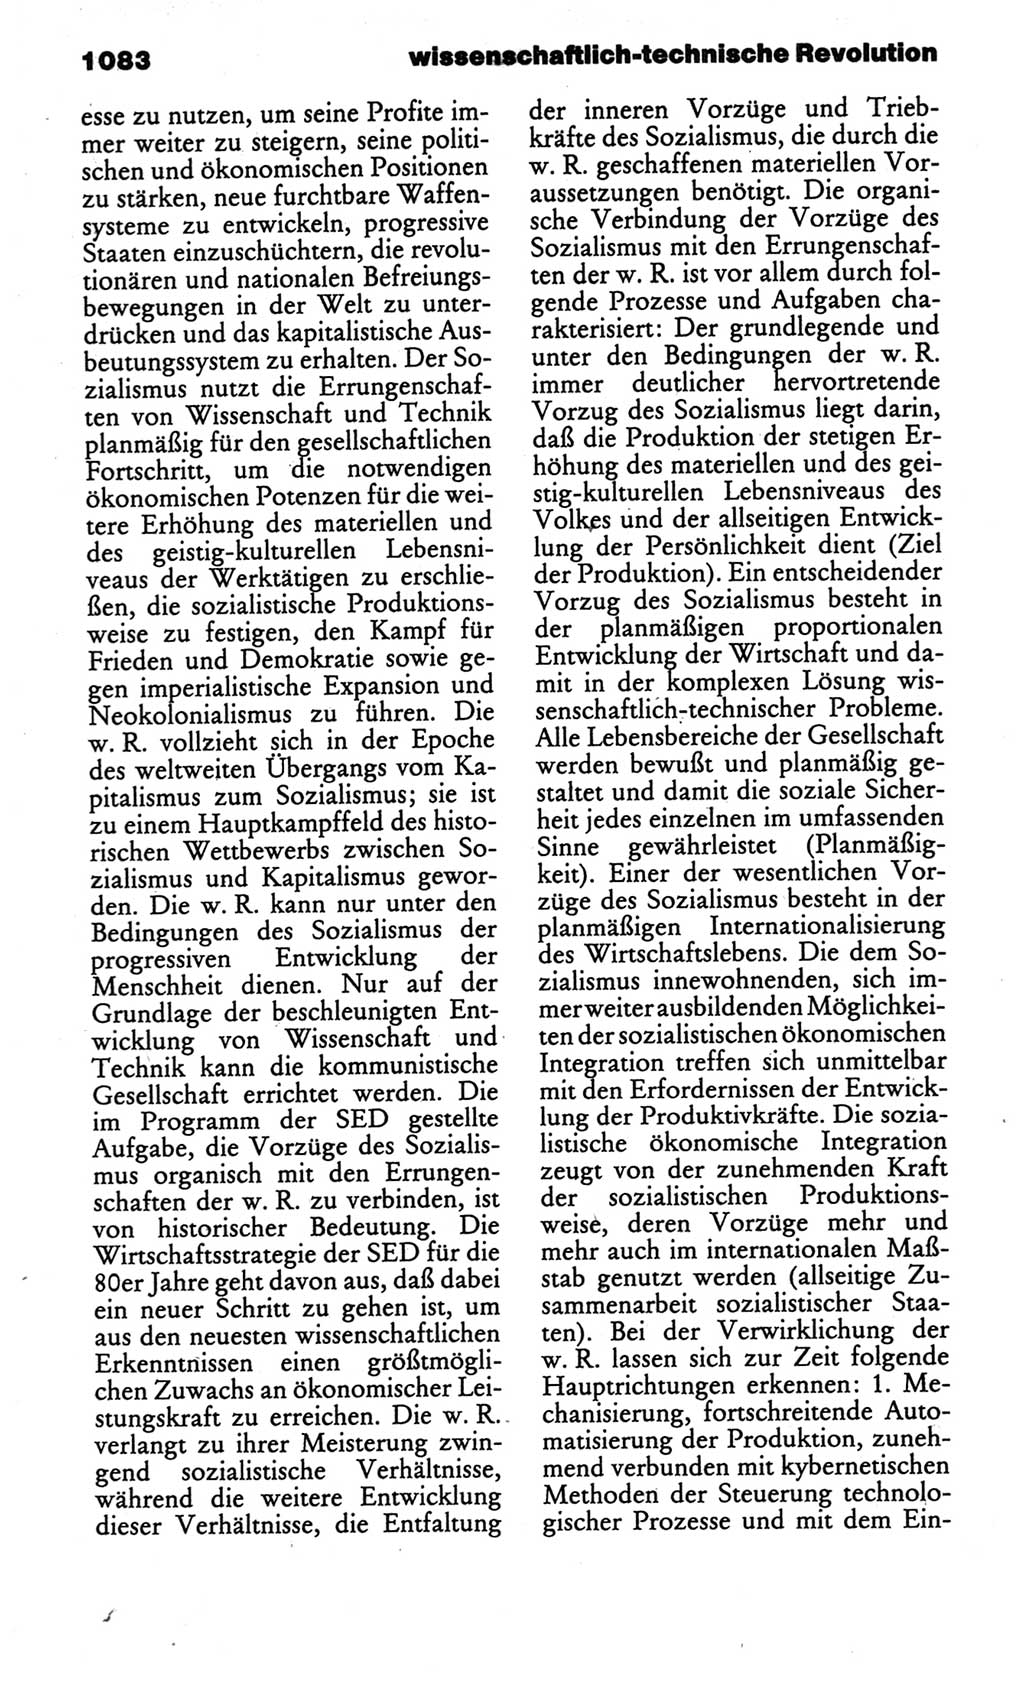 Kleines politisches Wörterbuch [Deutsche Demokratische Republik (DDR)] 1986, Seite 1083 (Kl. pol. Wb. DDR 1986, S. 1083)